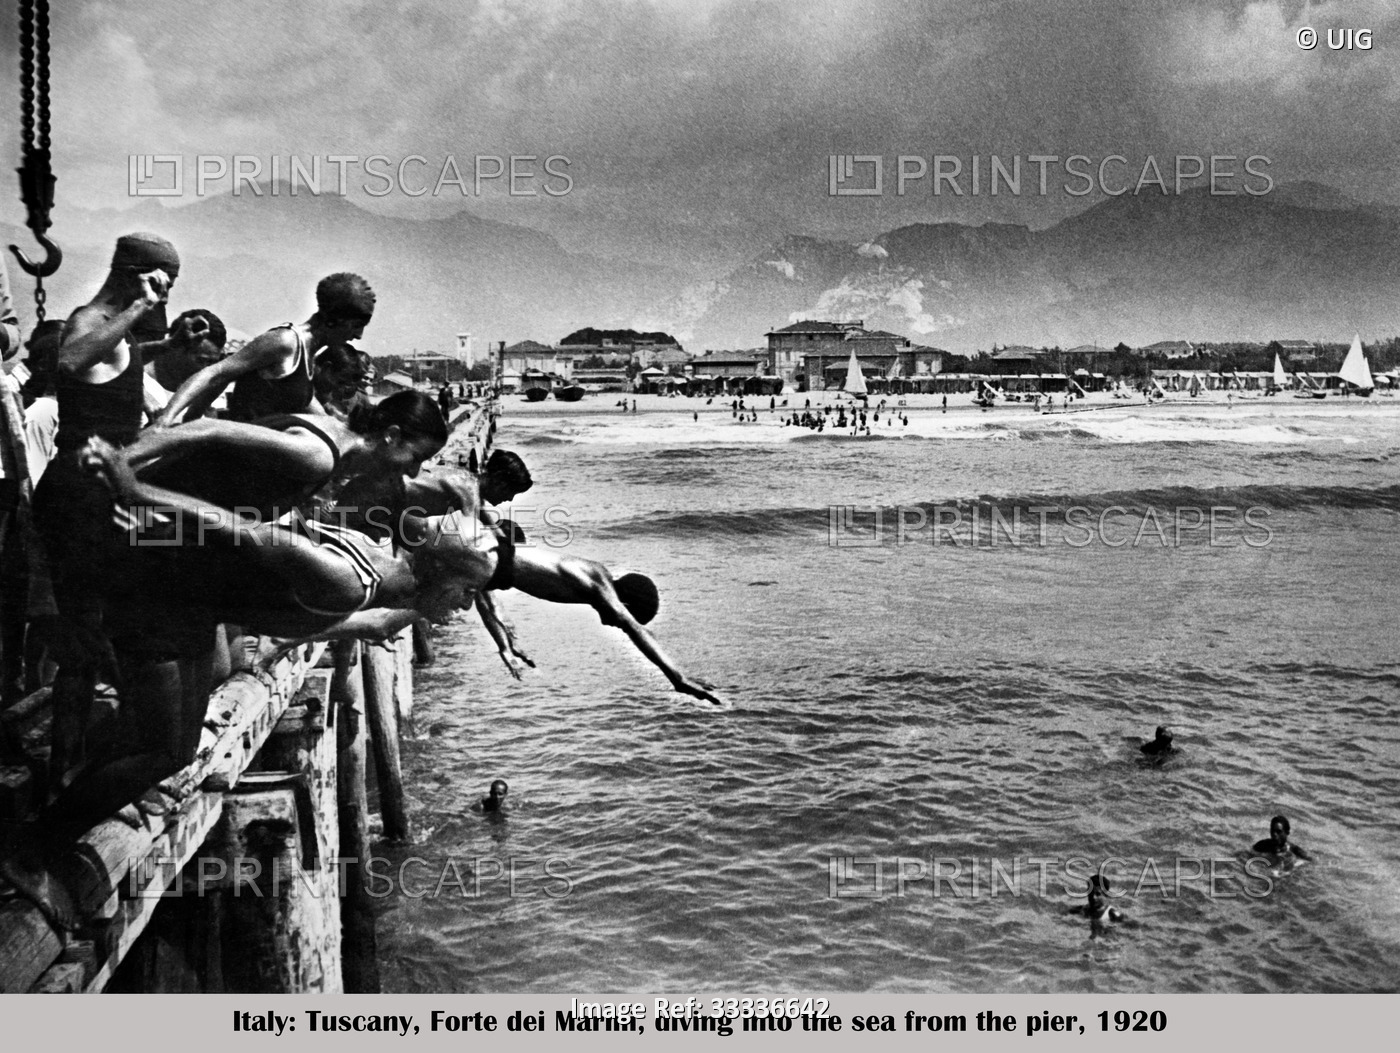 toscana, forte dei marmi, tuffi in mare dal ponte caricatore, 1920